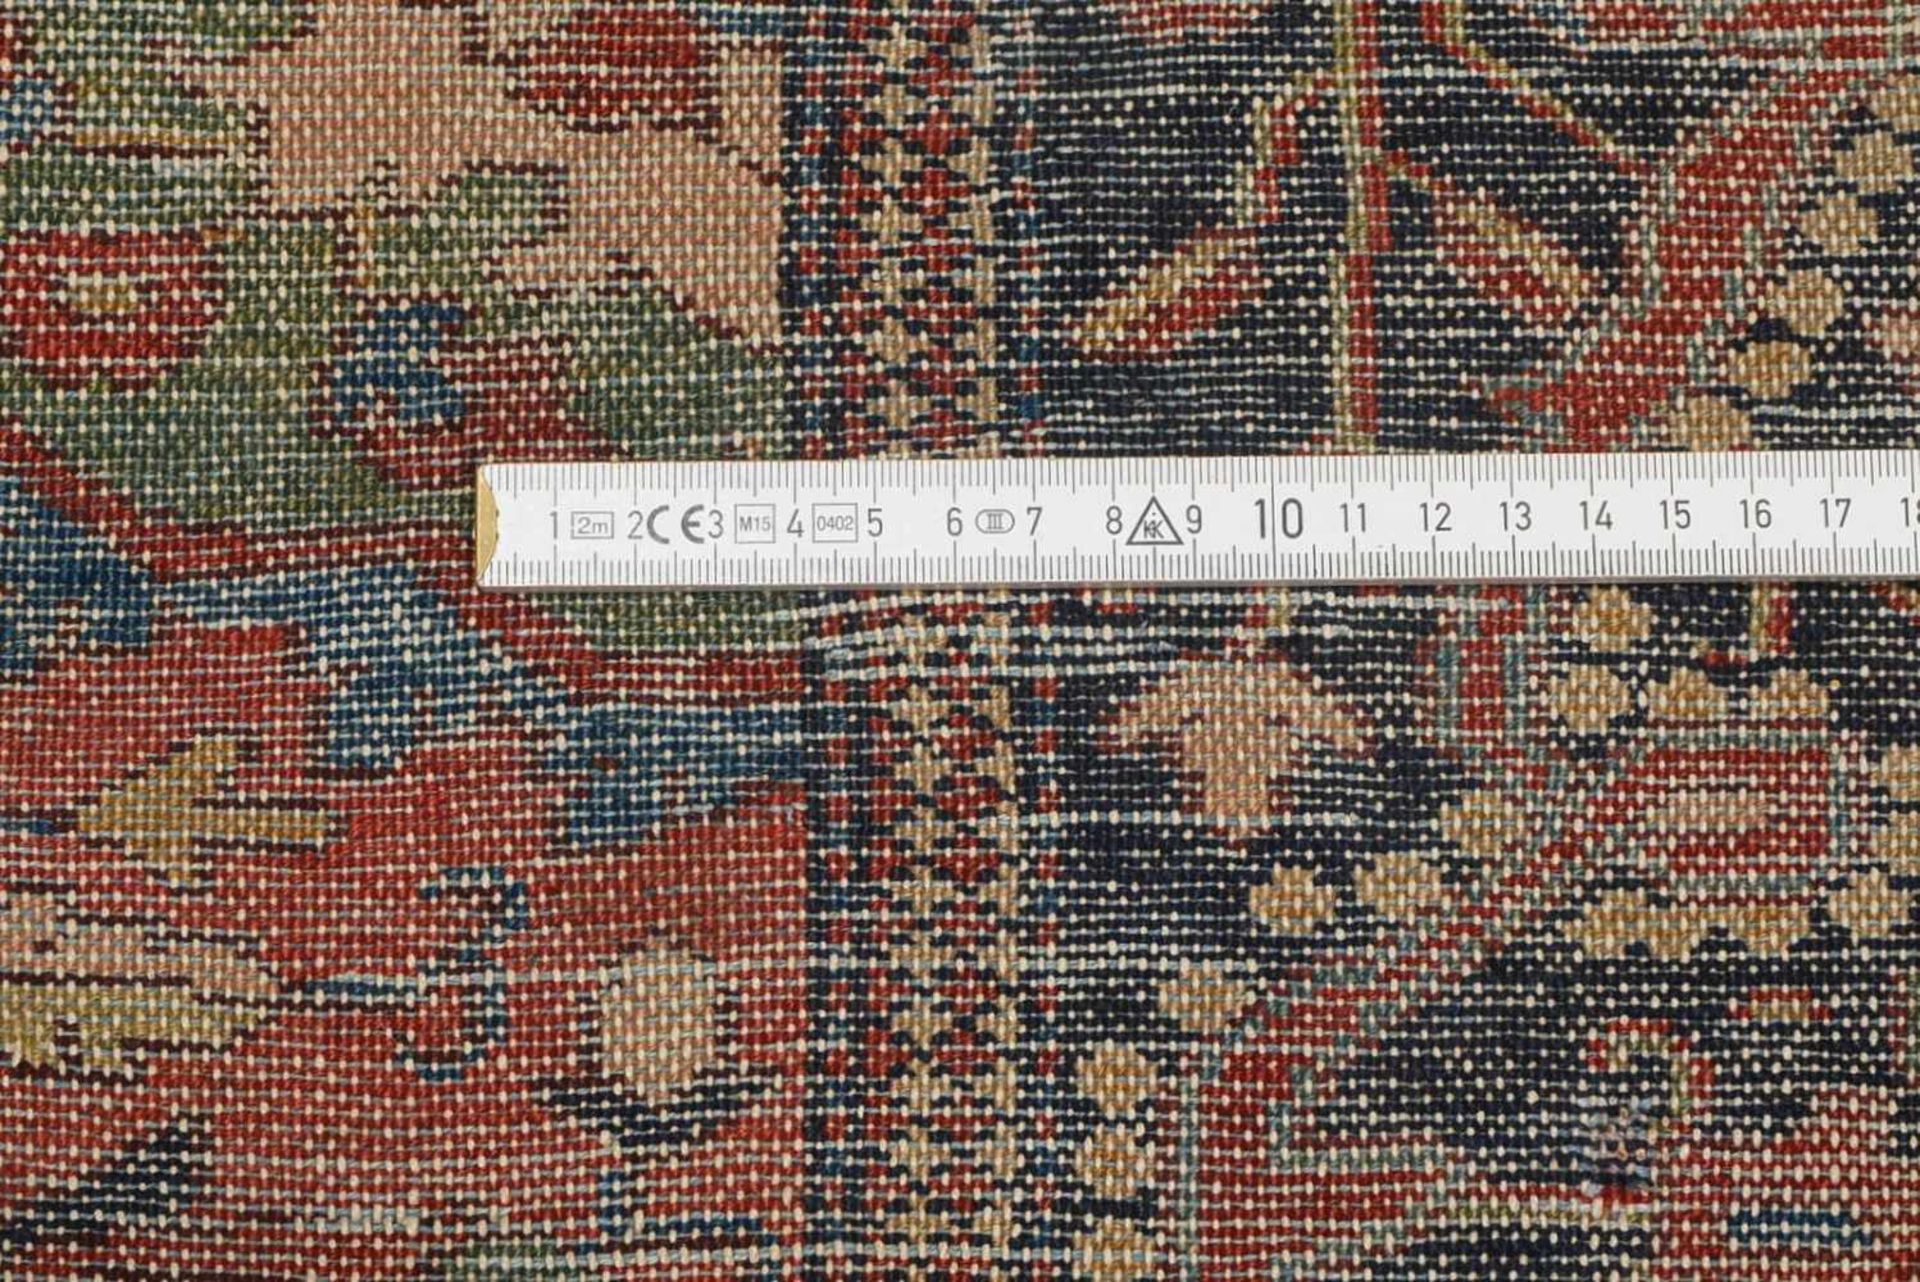 Ferraghan, museal, Naturfarben, mit Abrash, tuchförmiger Griff, ringsum komplett, fachmännisch - Bild 2 aus 2